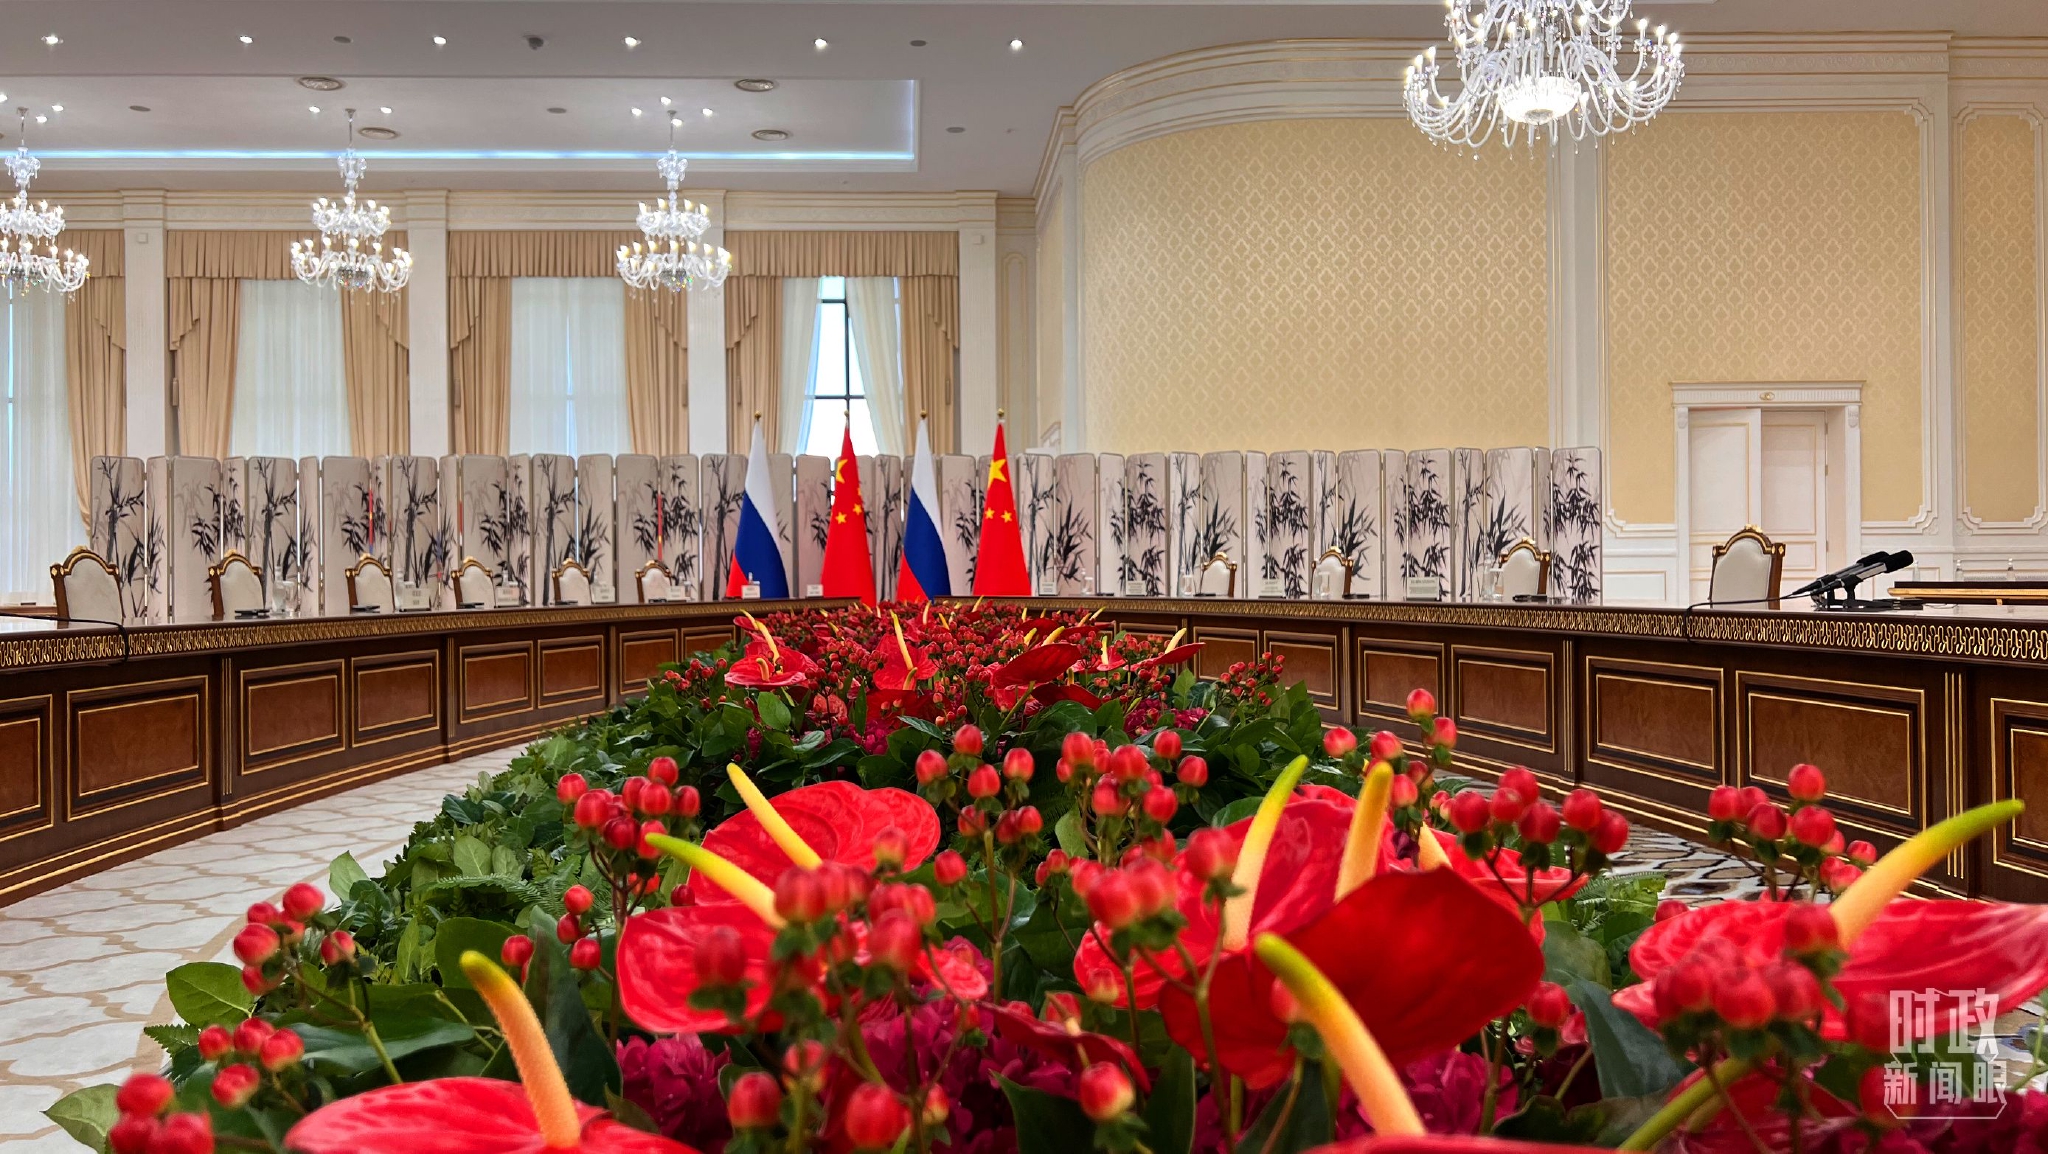 △中俄两国元首会见在这里举行。（总台央视记者张宇拍摄）